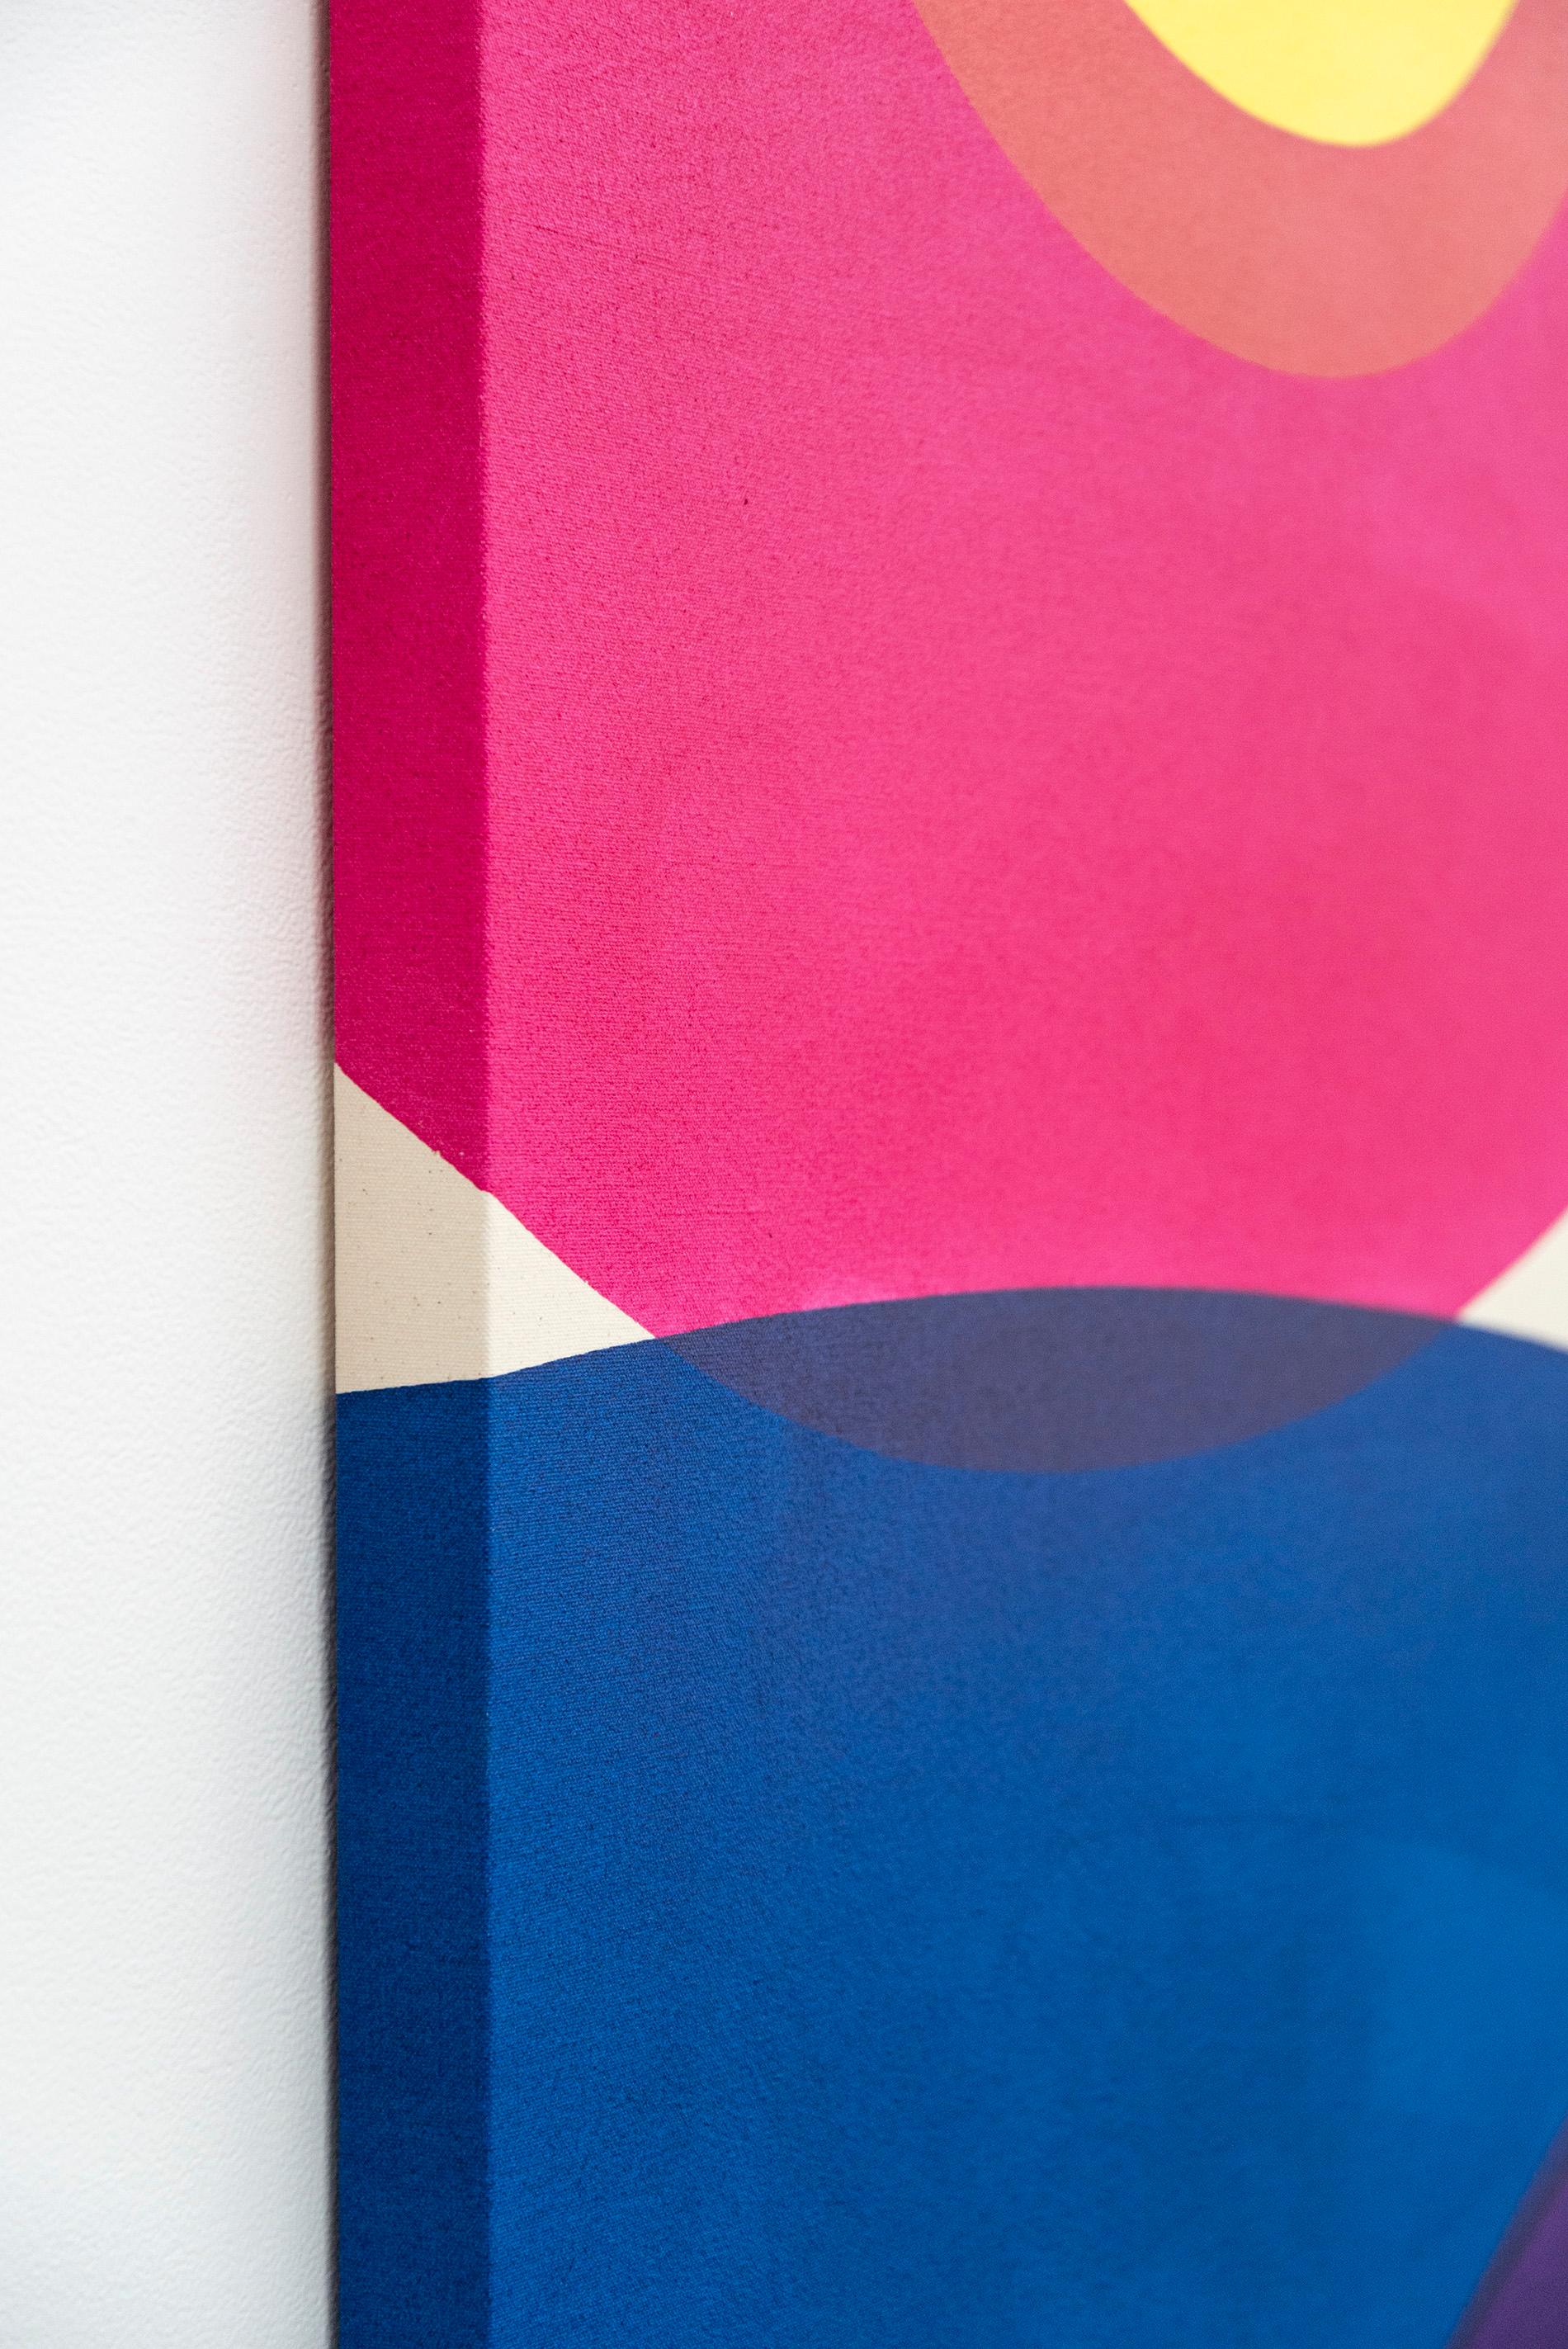 Ein kurzer Aufenthalt Nr. 4 – leuchtende Farben, abstrakt, minimalistisch, Acryl auf Leinwand 2